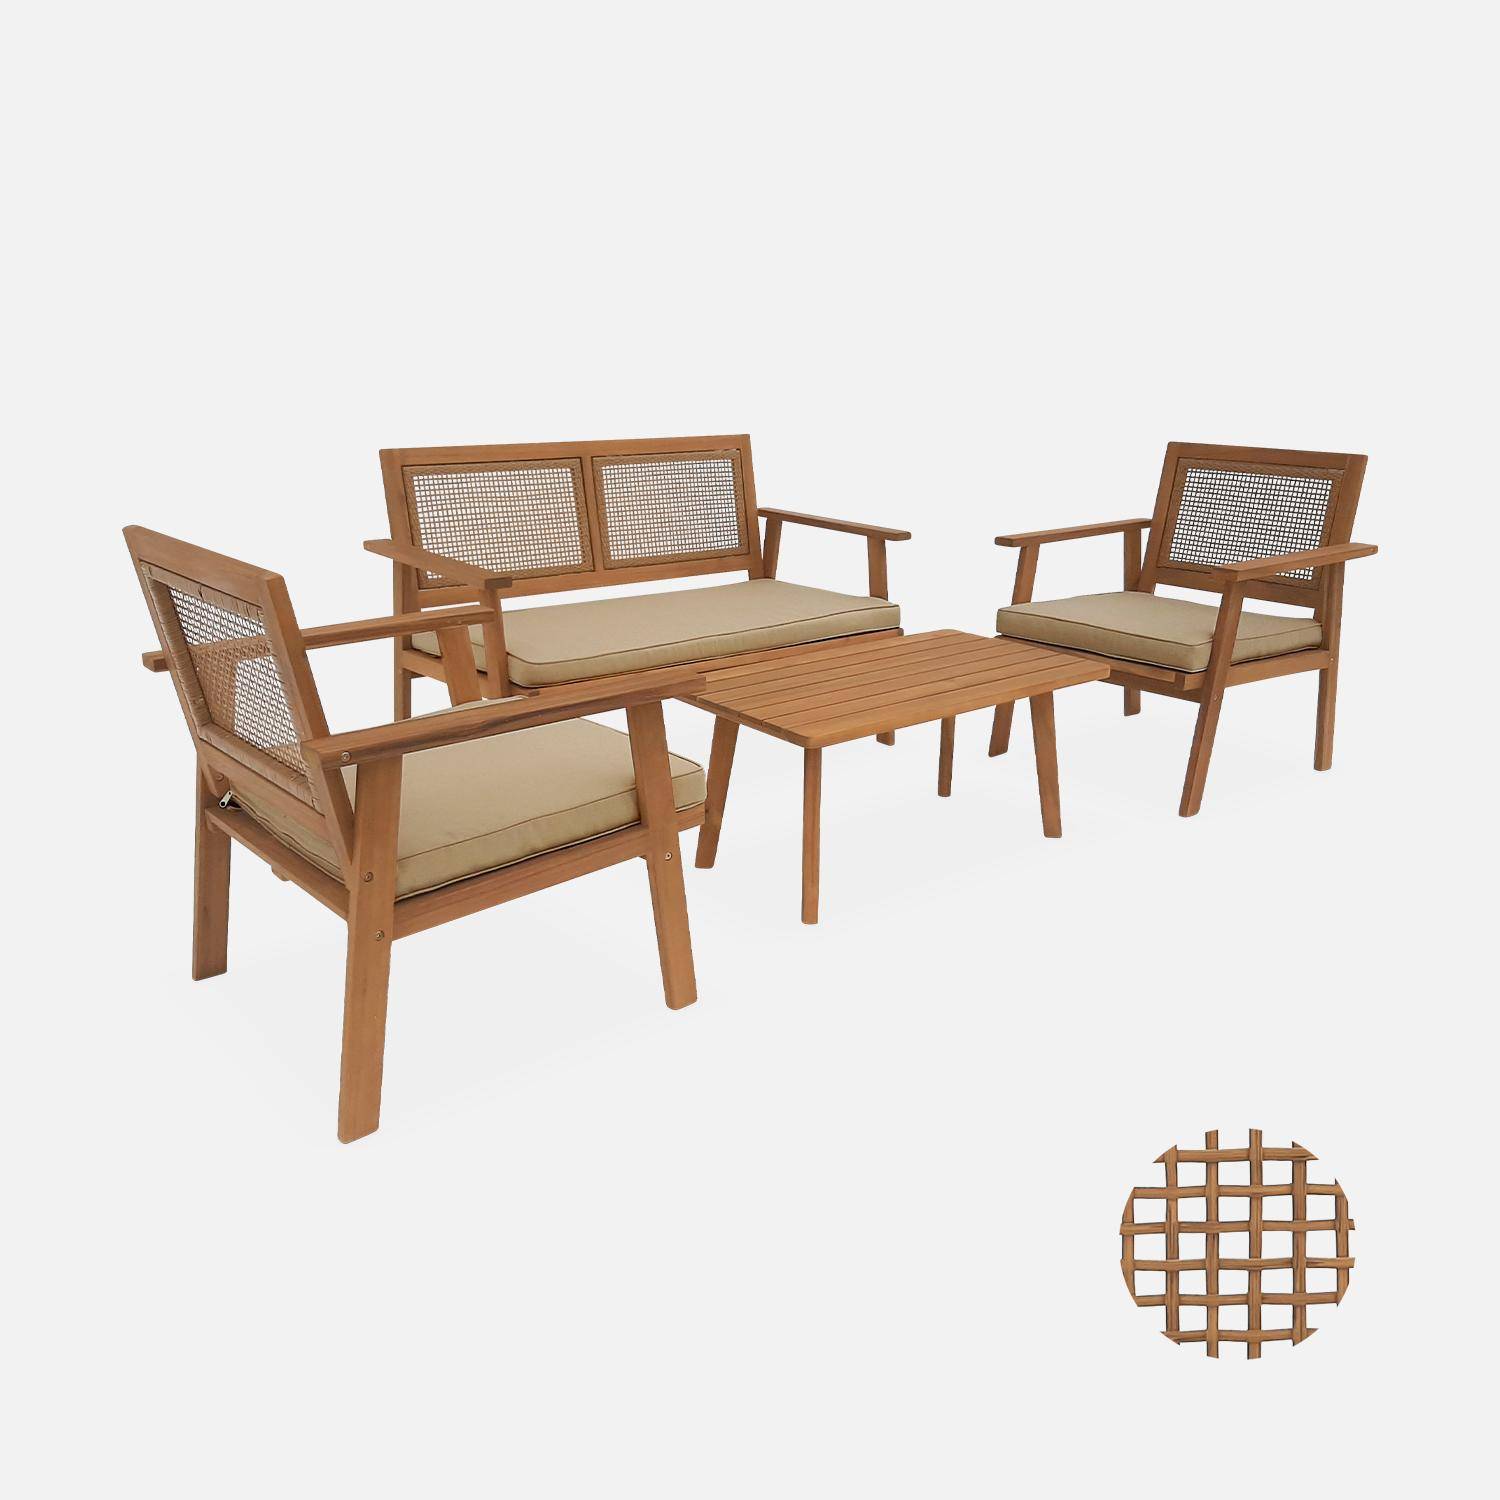 Conjunto de muebles de jardín, Bohémia, caña cuadrada, sofá 2 plazas, 2 sillones, 1 mesa de centro 117x64x74 cm Photo3